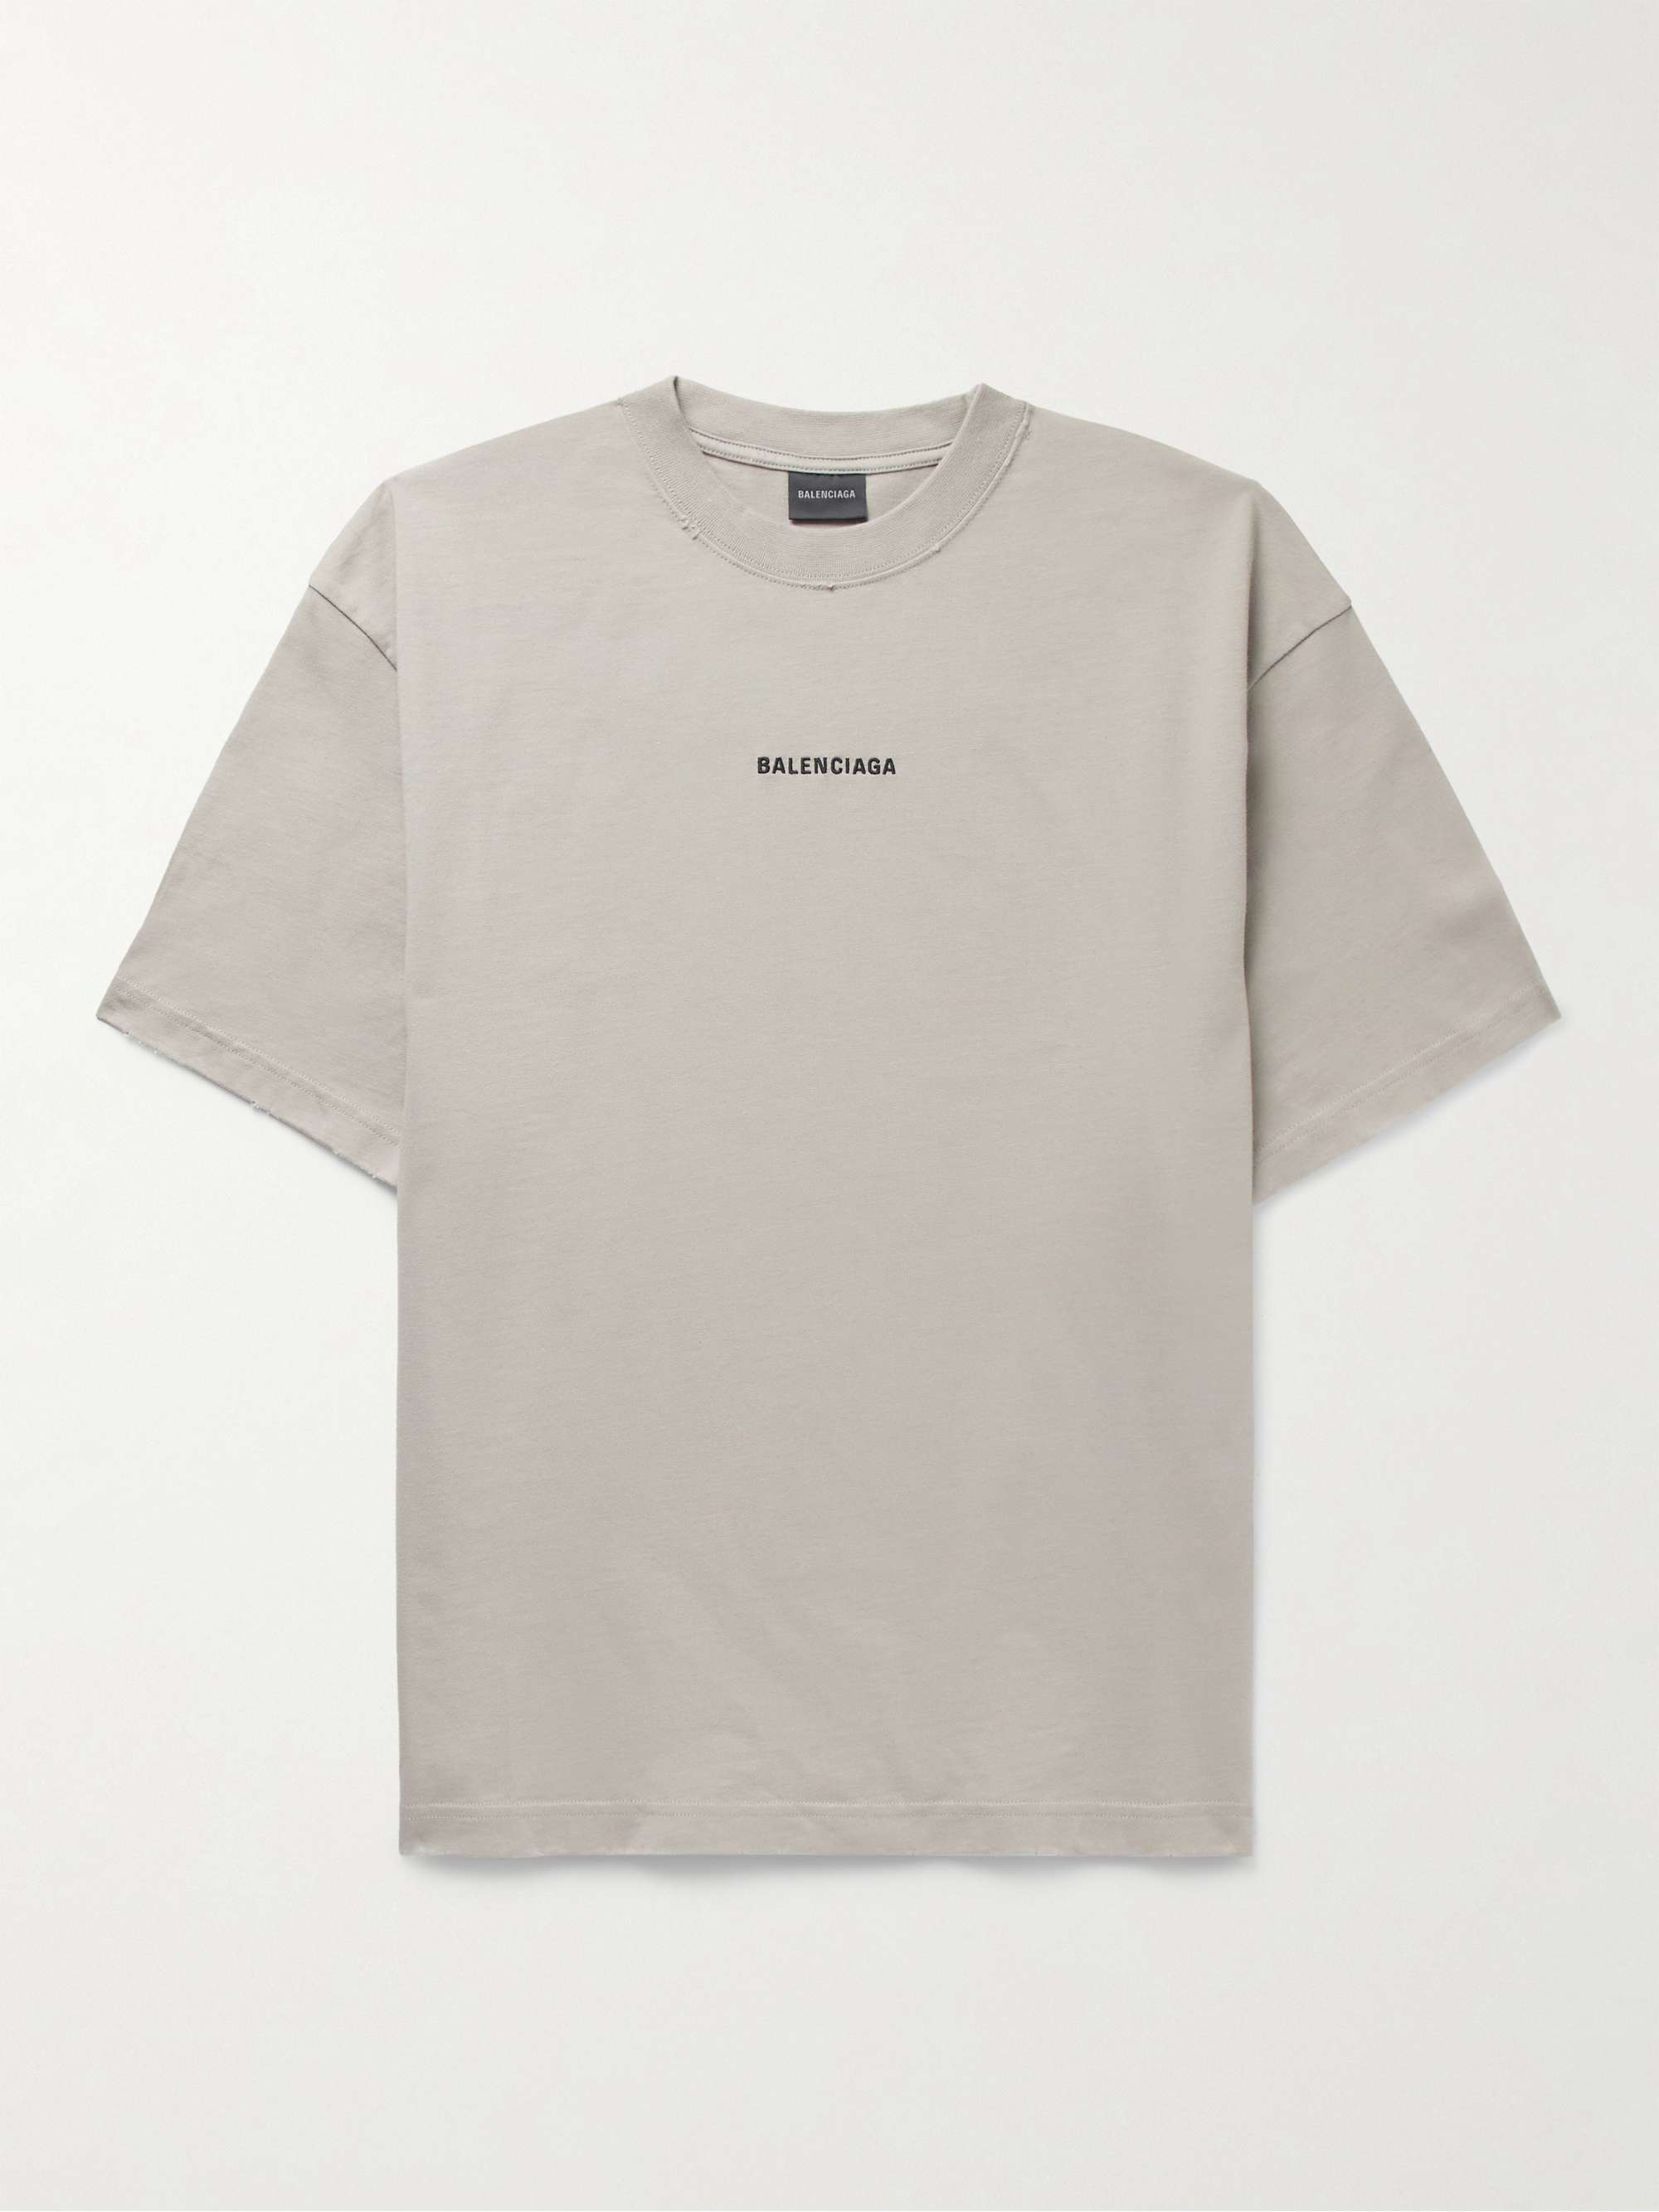 Balenciaga Embroidered-Logo Cotton T-Shirt